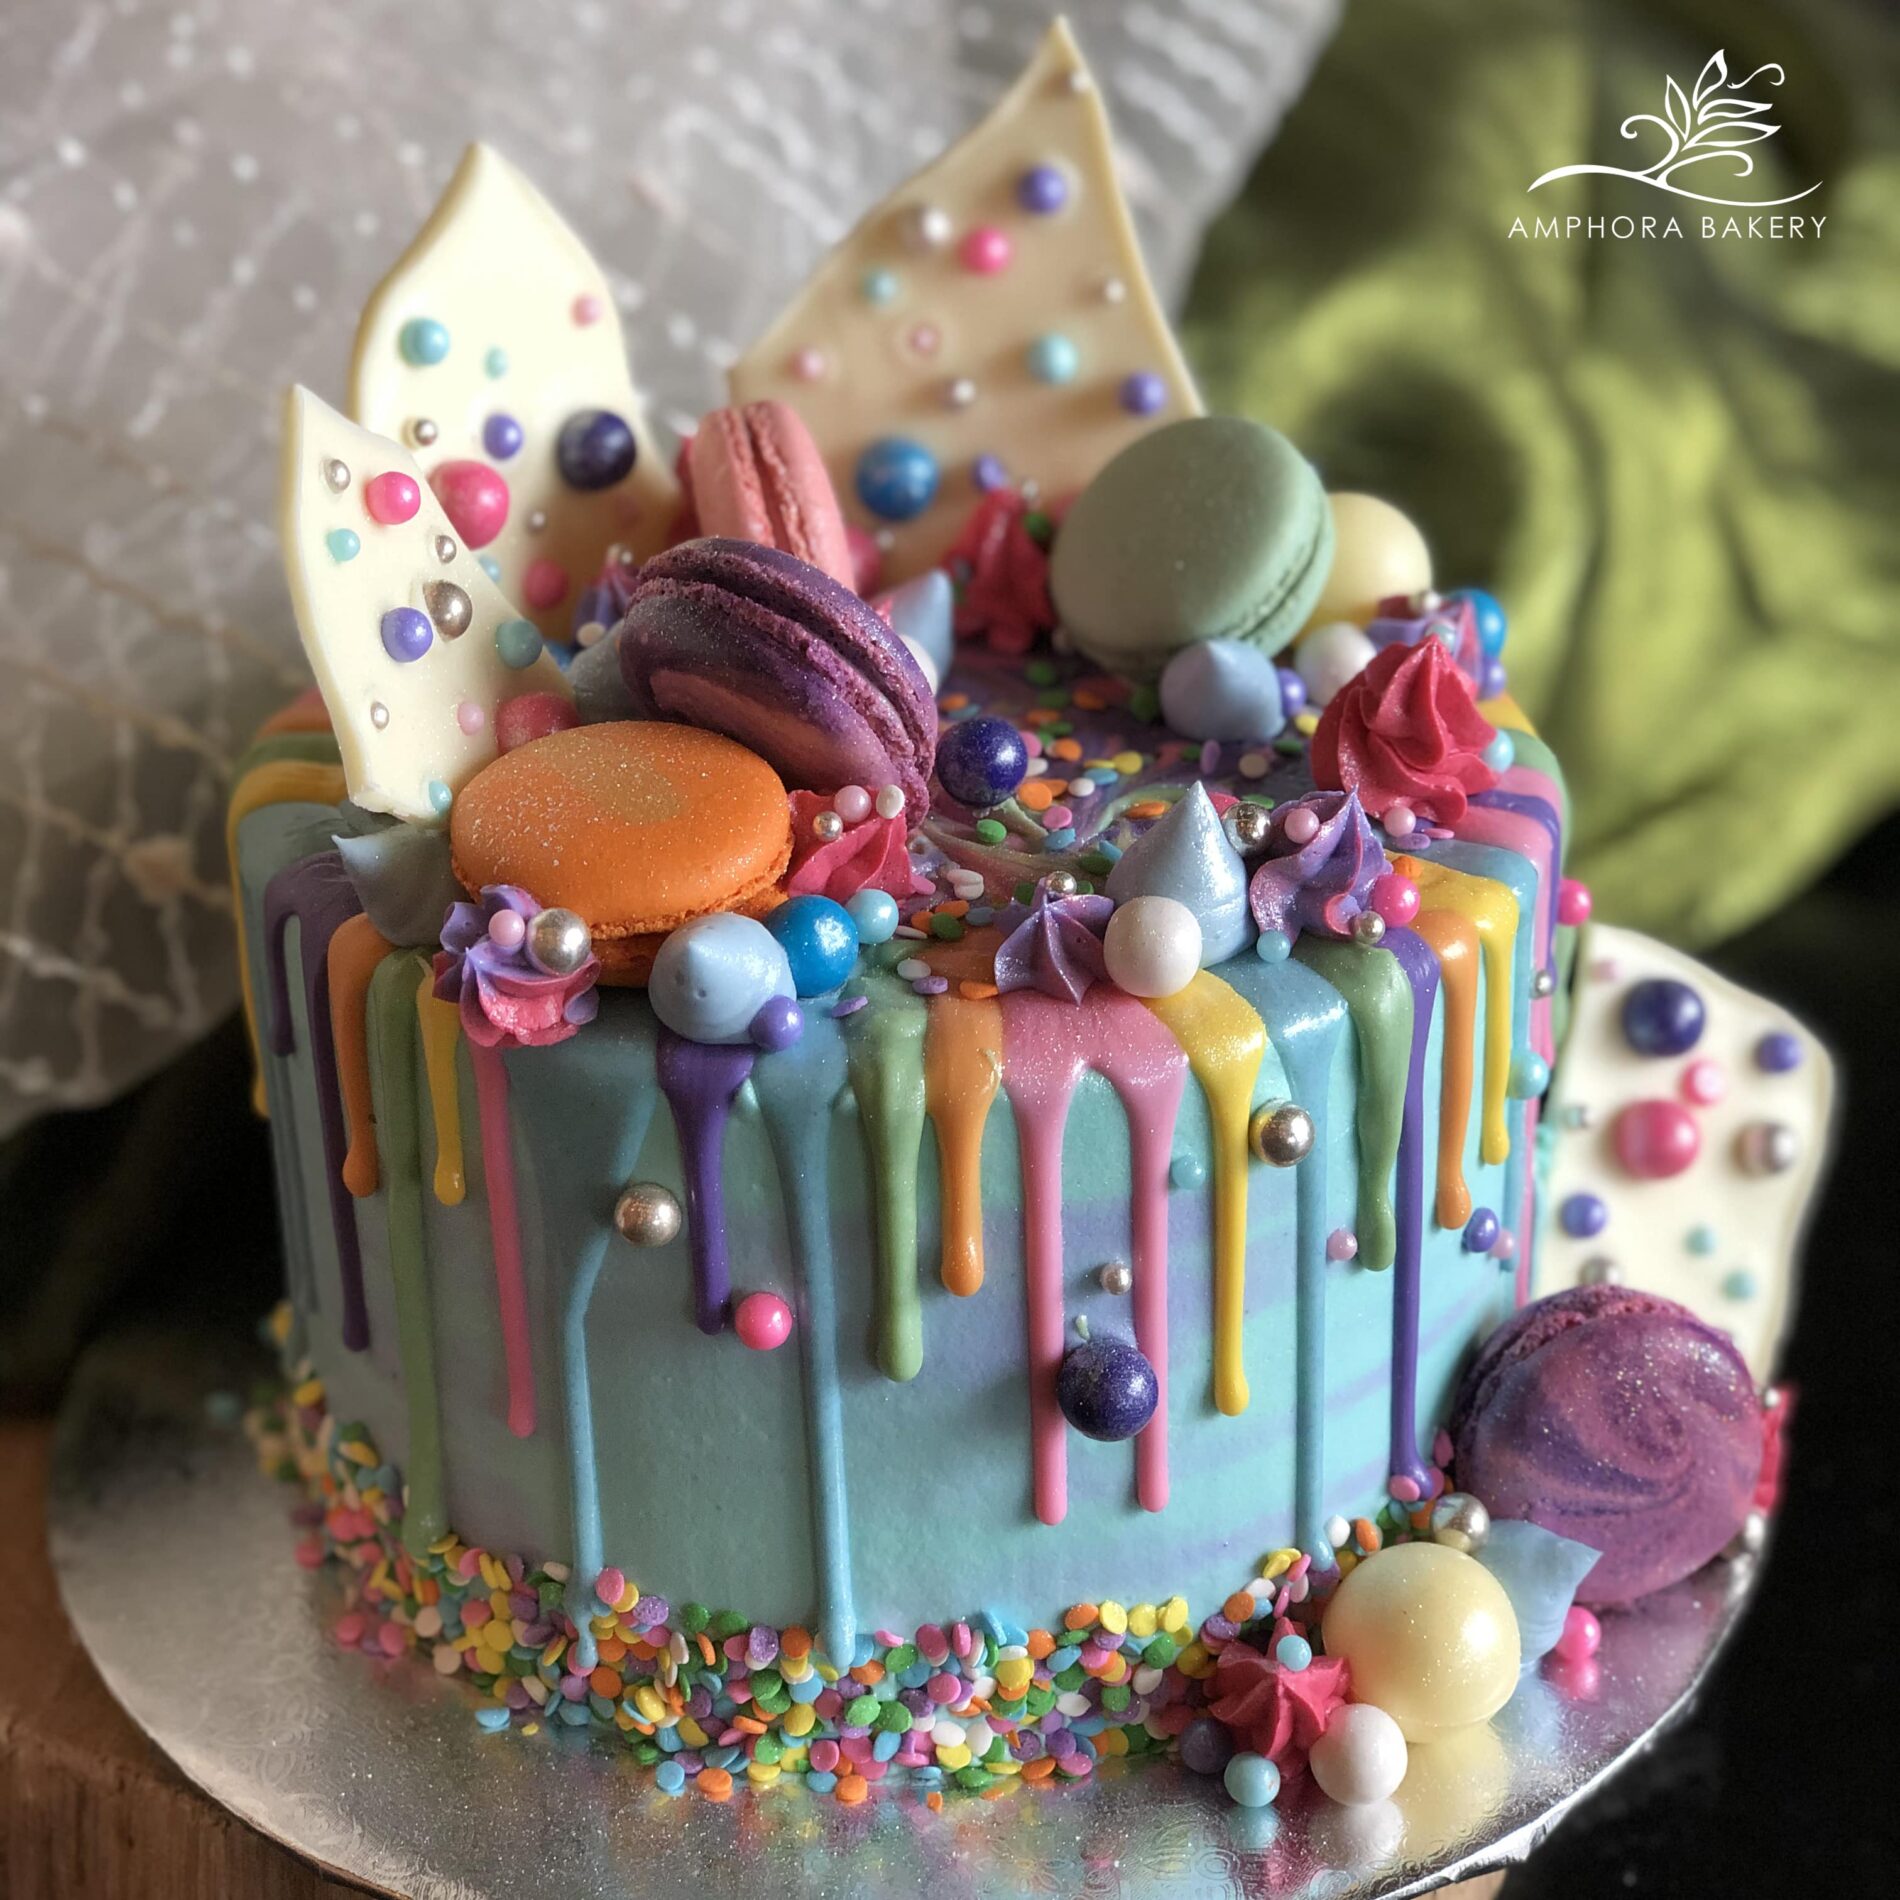 elaborately decorated cake by Amphora Bakery